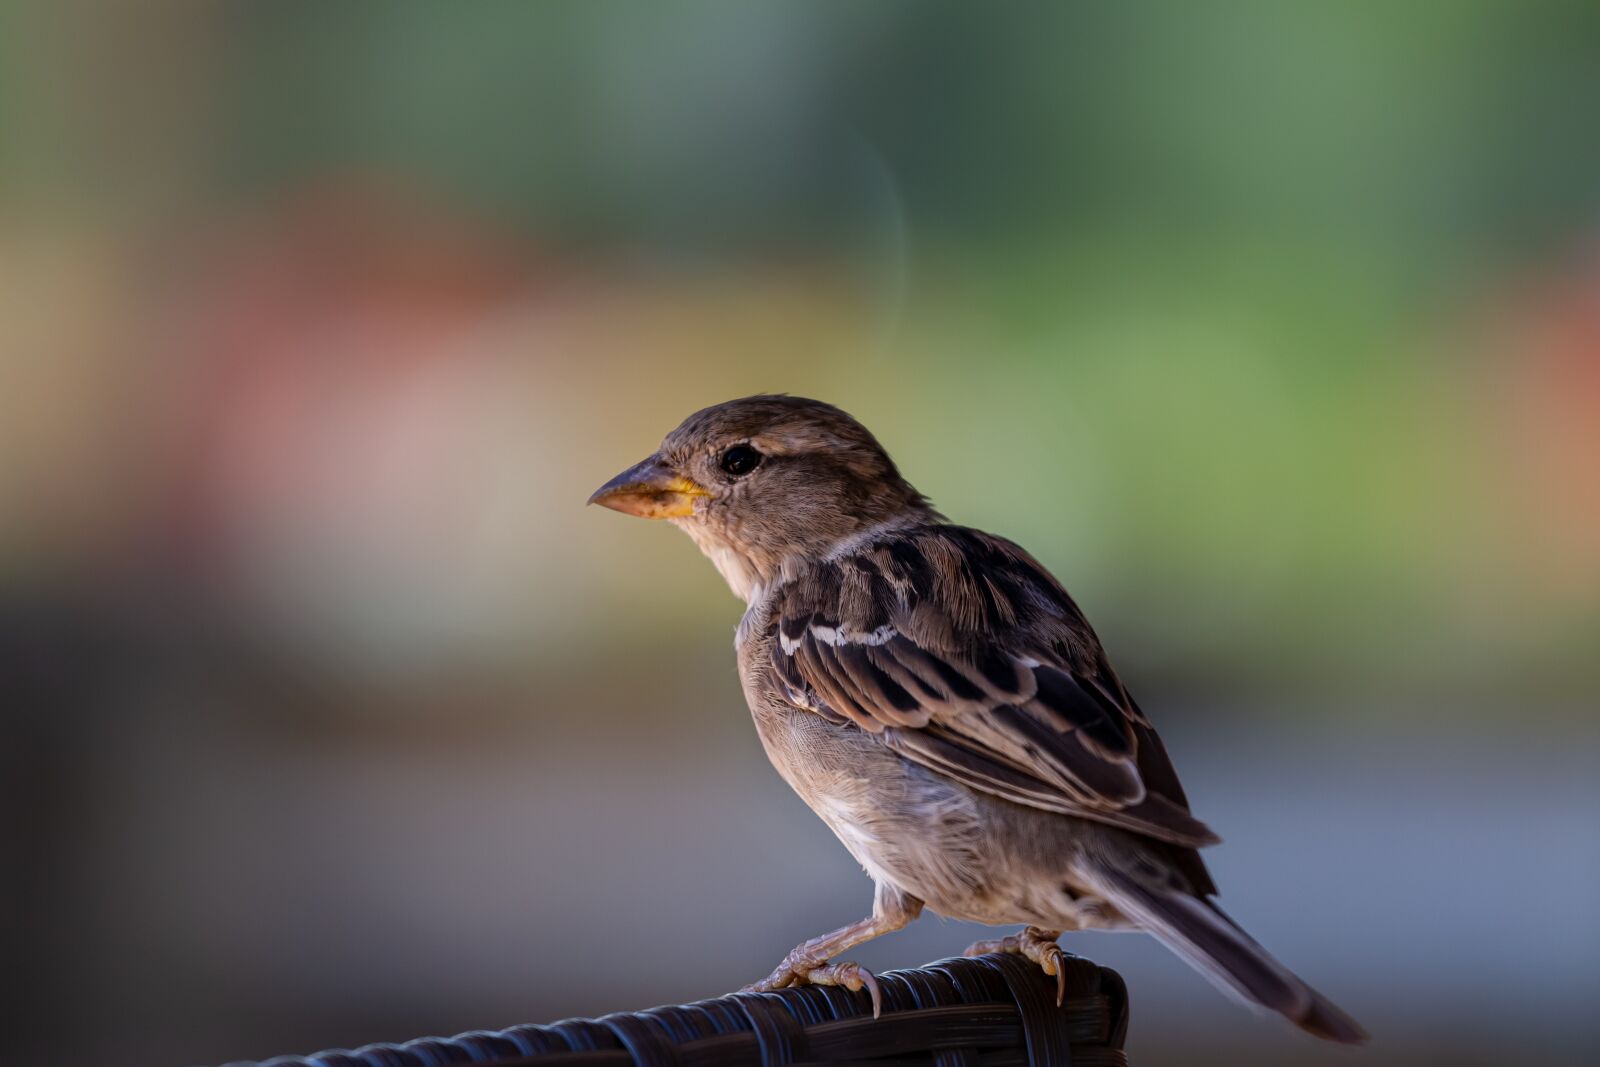 Canon EOS 7D sample photo. Bird, close up, animal photography